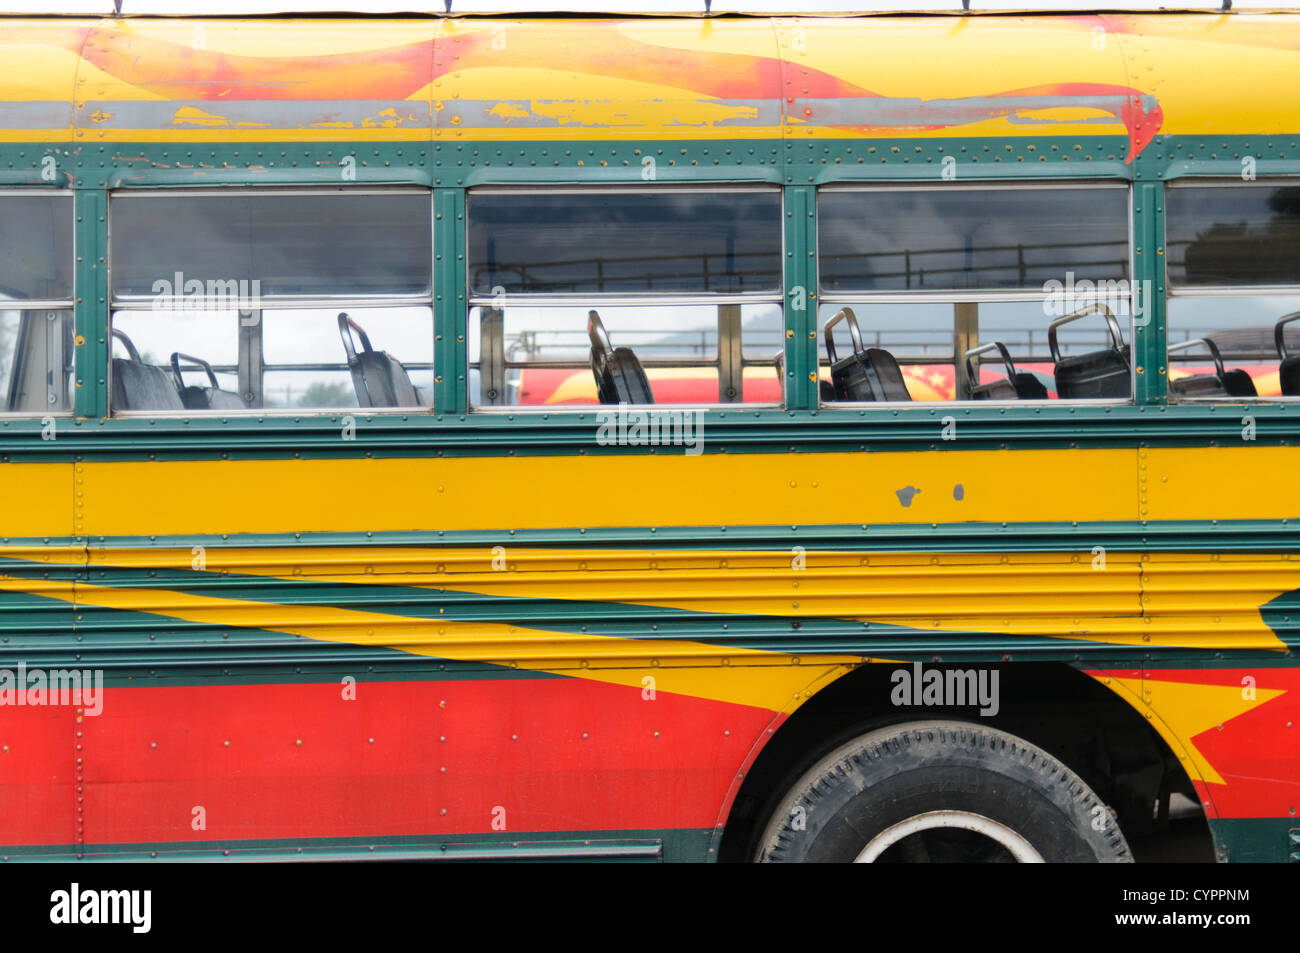 Seite Detail ein Huhn Busse hinter dem Mercado Municipal (Stadtmarkt) in Antigua, Guatemala. Aus diesem umfangreichen zentralen Busbahnhof strahlenförmig der Routen in Guatemala. Oft bunt bemalt, die Huhn-Busse sind nachgerüsteten amerikanische Schulbusse und bieten ein günstiges Transportmittel im ganzen Land. Stockfoto